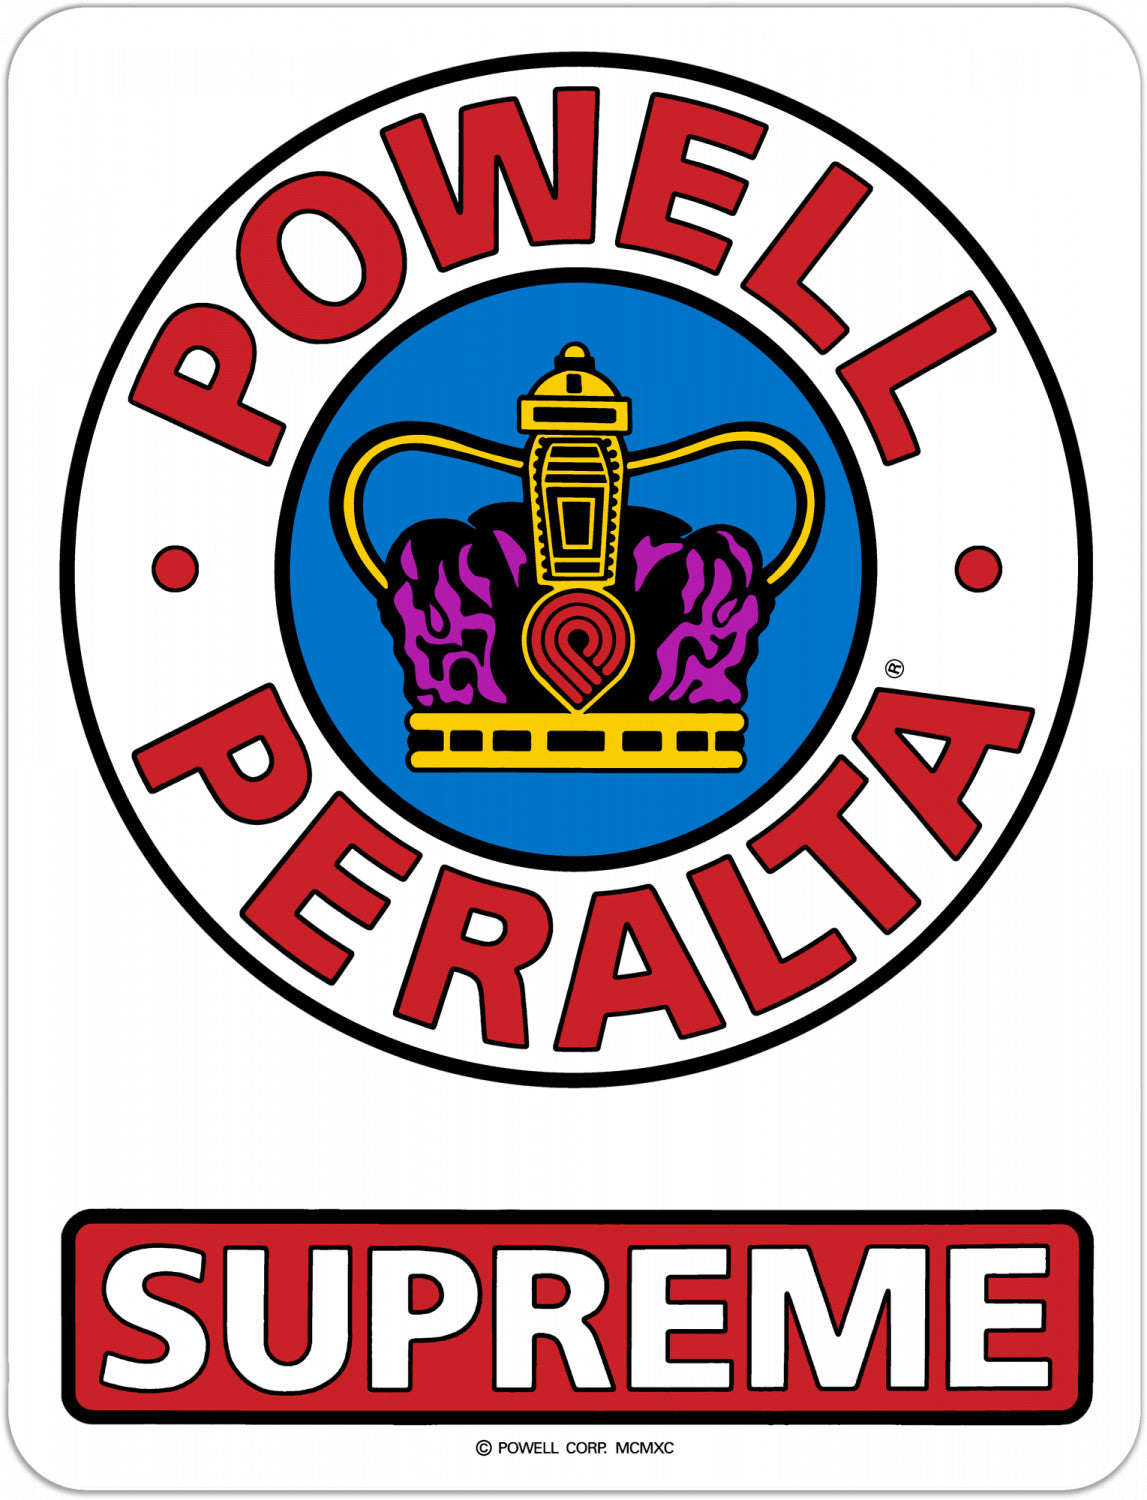 Powell-Peralta Supreme OG Sticker, Red/White/Blue, 6